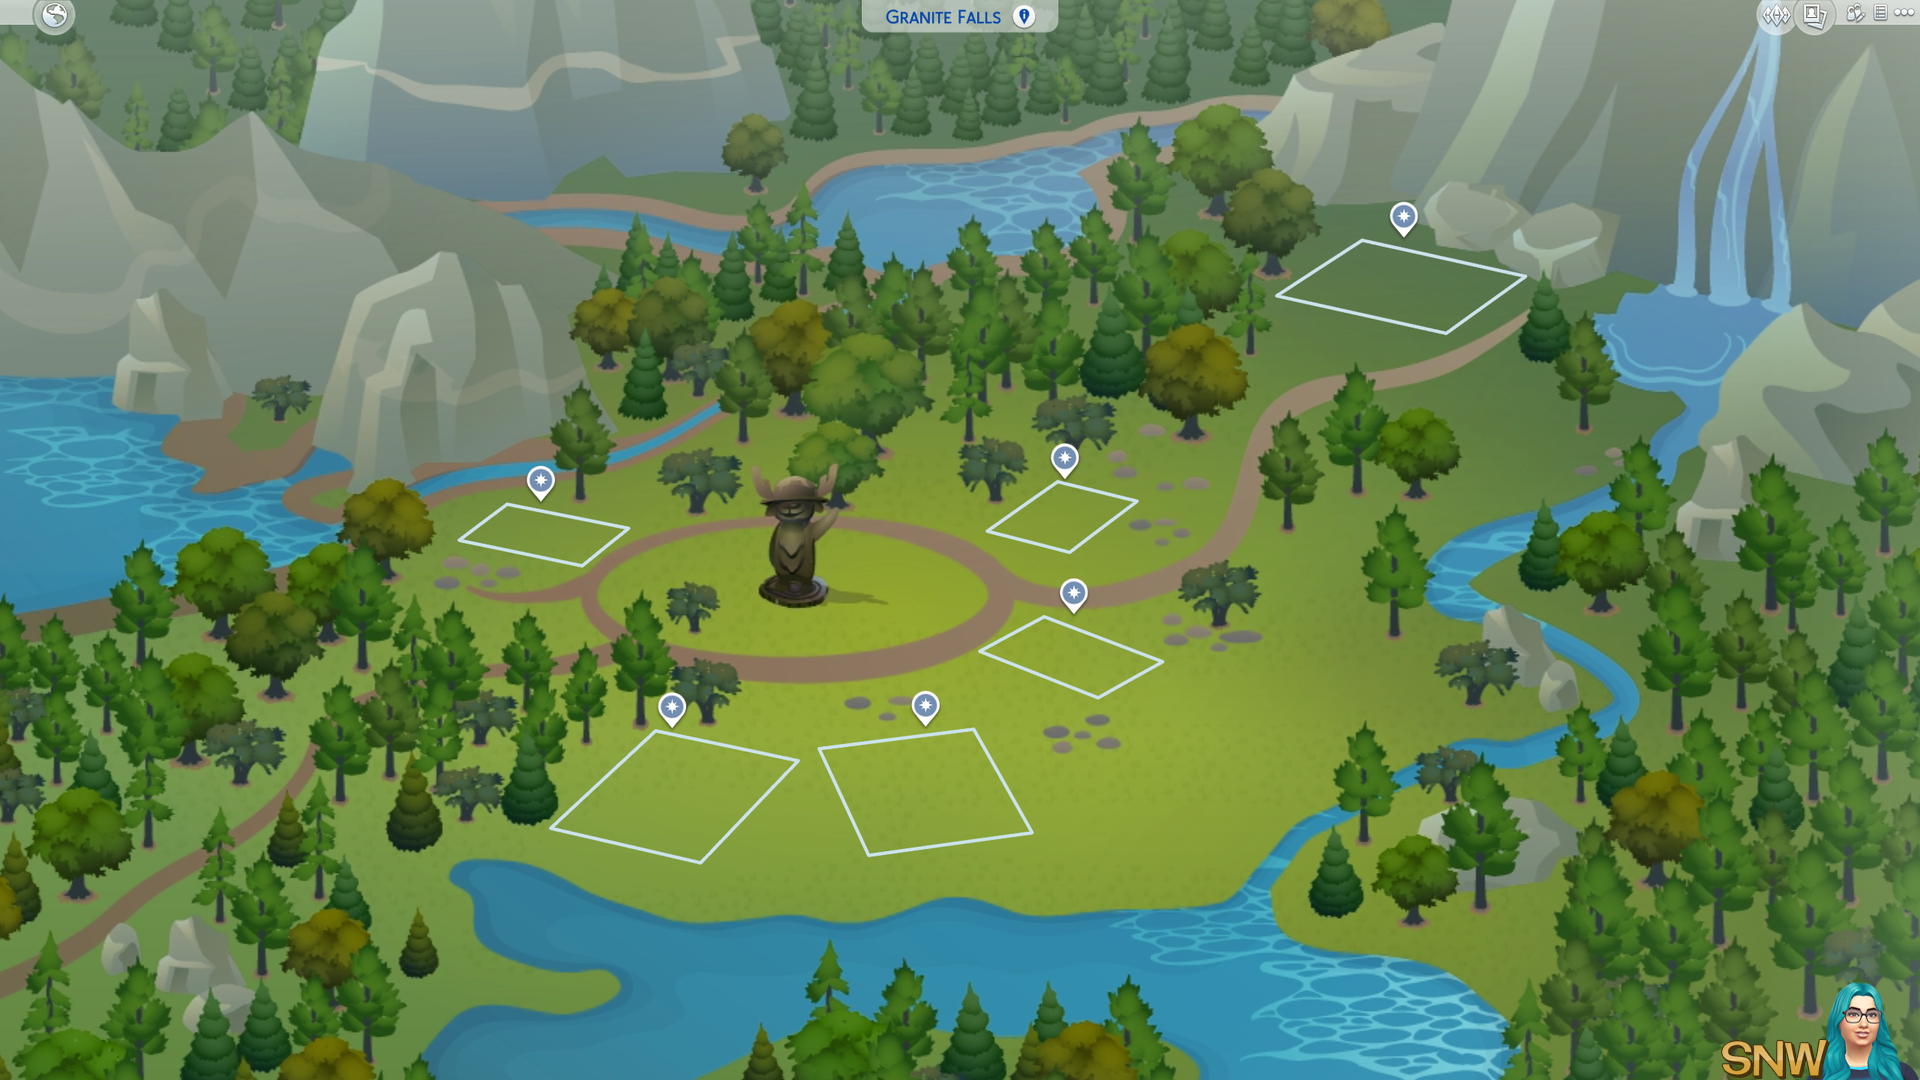 The Sims 4: Granite Falls world (empty)